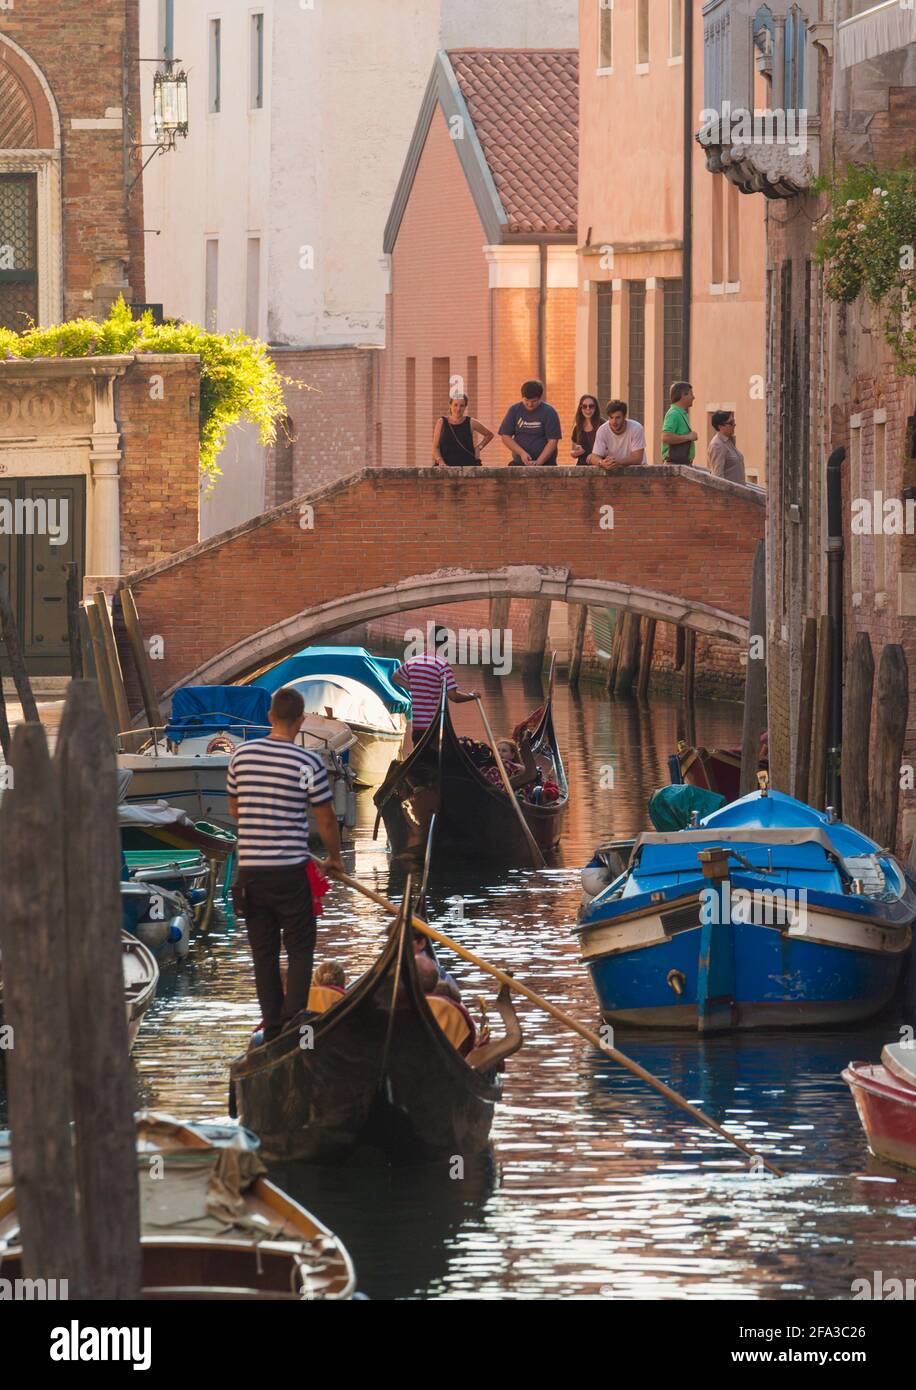 Venecia, Provincia de Venecia, Región del Véneto, Italia. Gente en puente viendo las góndolas acercándose. Venecia y su laguna son Patrimonio de la Humanidad de la UNESCO Foto de stock